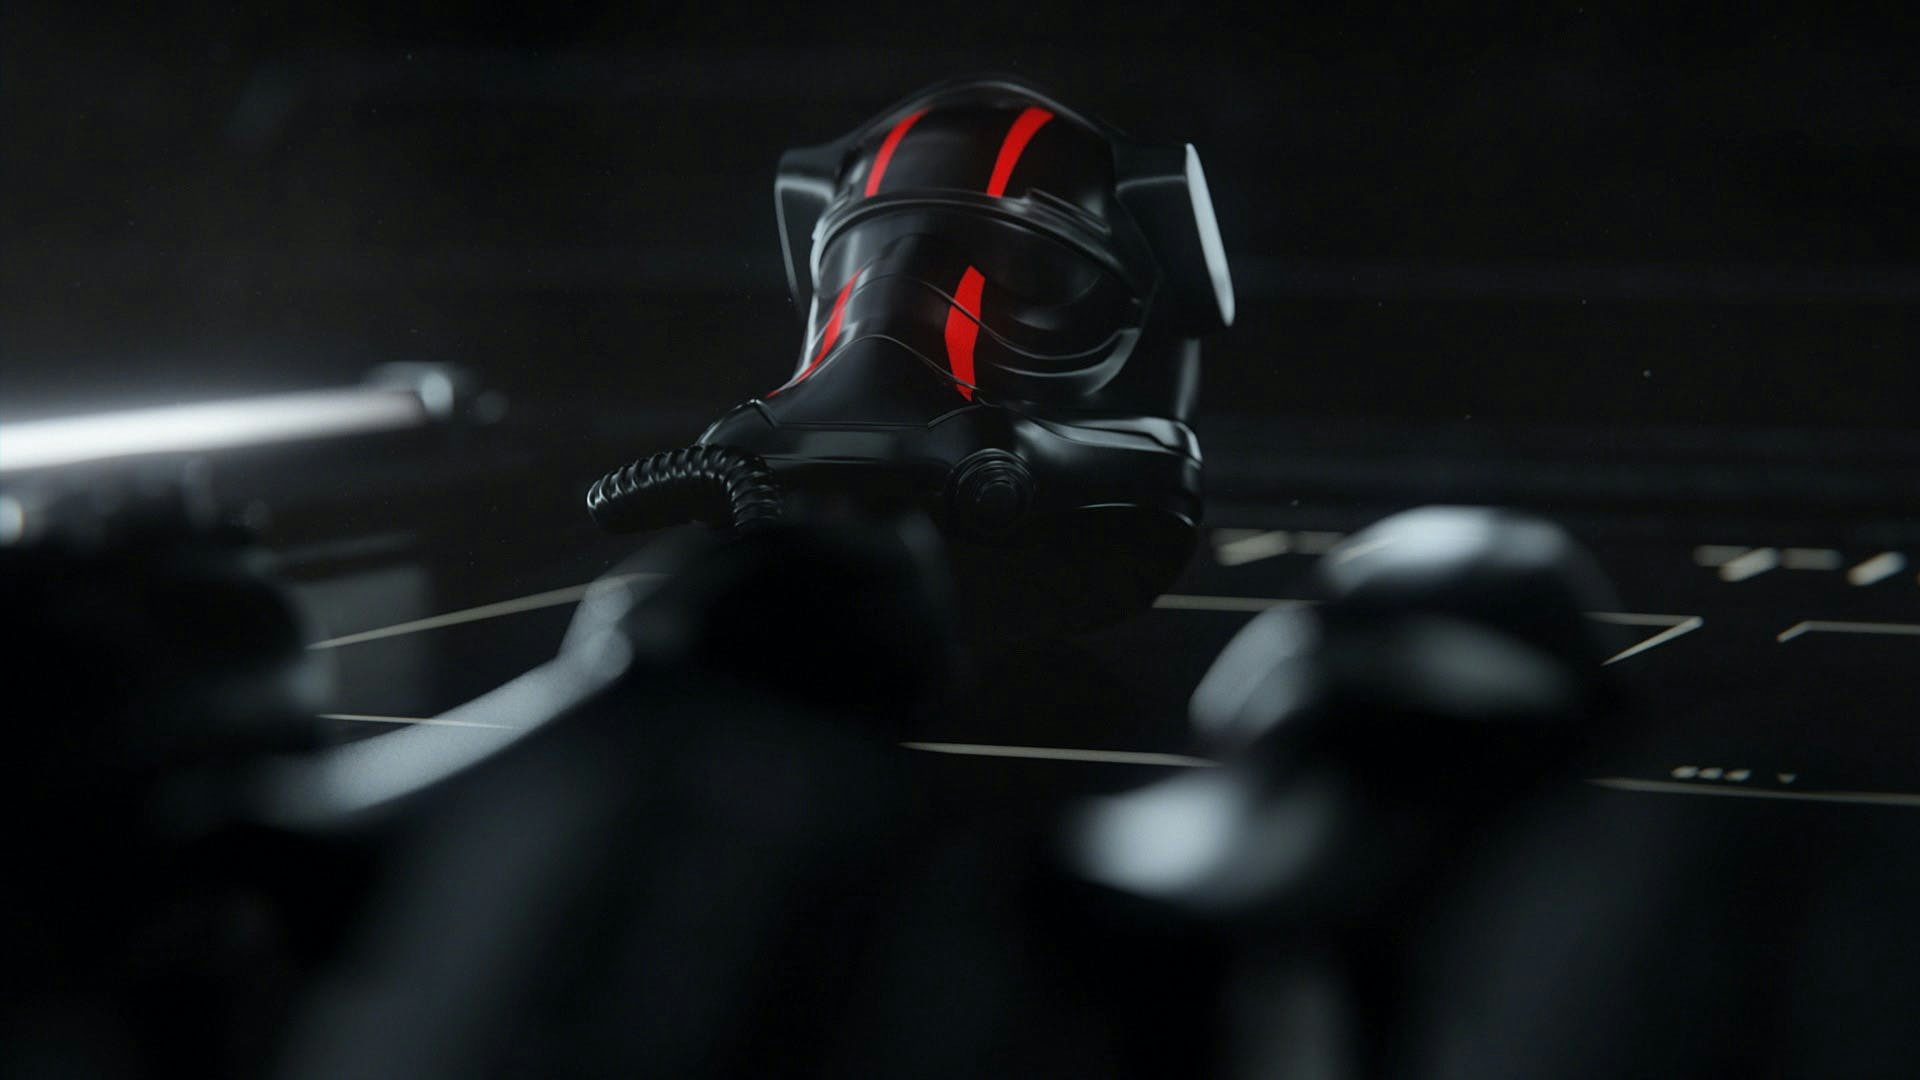 A Lego Star Wars Elite tie fighter pilot helmet in a dark environment